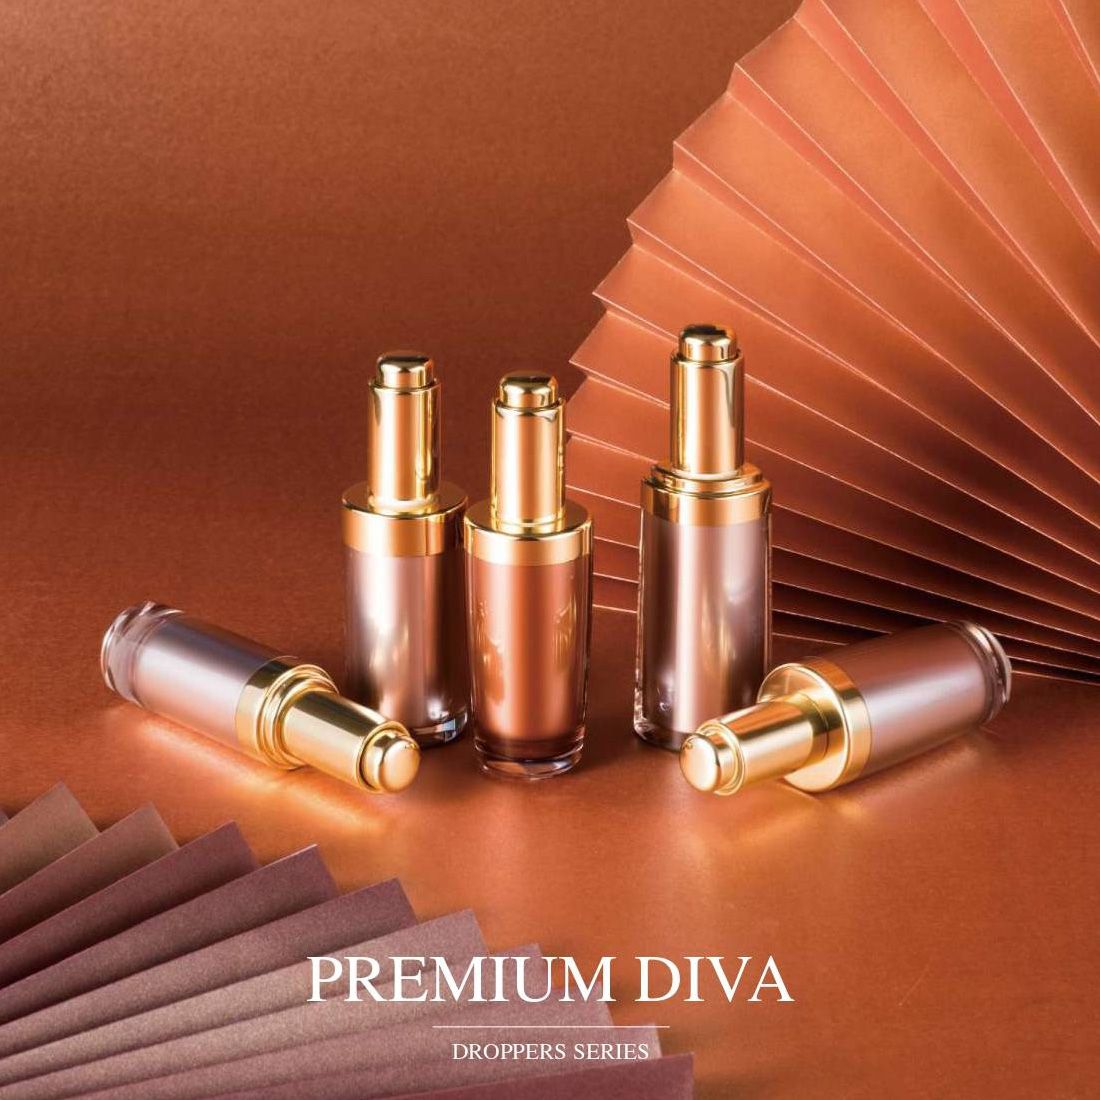 Premium Diva (Embalaje para cosméticos y cuidado de la piel con cuentagotas acrílicos de lujo) - Serie goteros